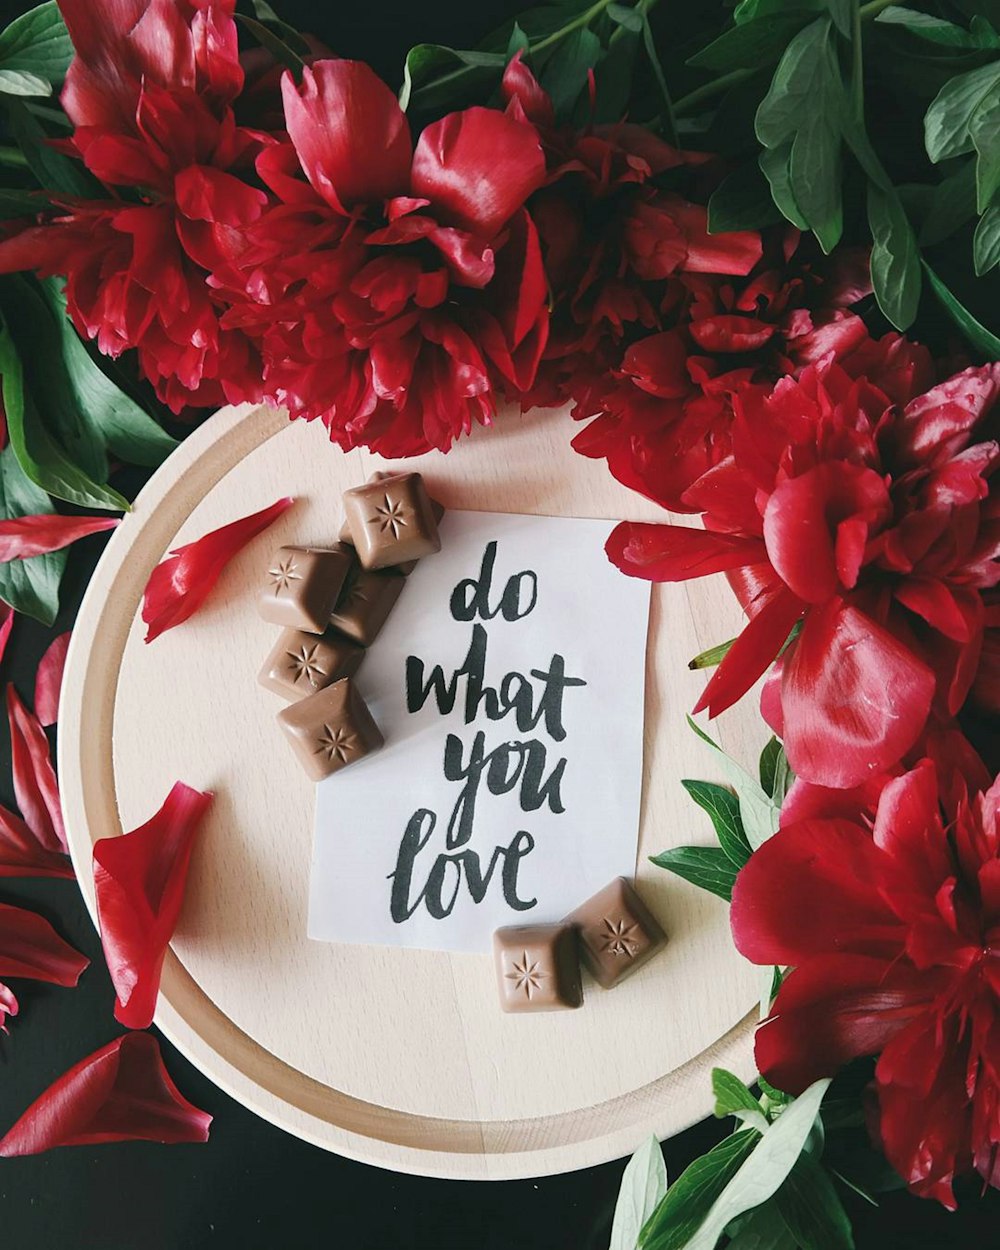 Eine Notiz auf einem Blatt Papier auf einem Teller neben roten Blumen mit der Aufschrift "Tu, was du liebst".